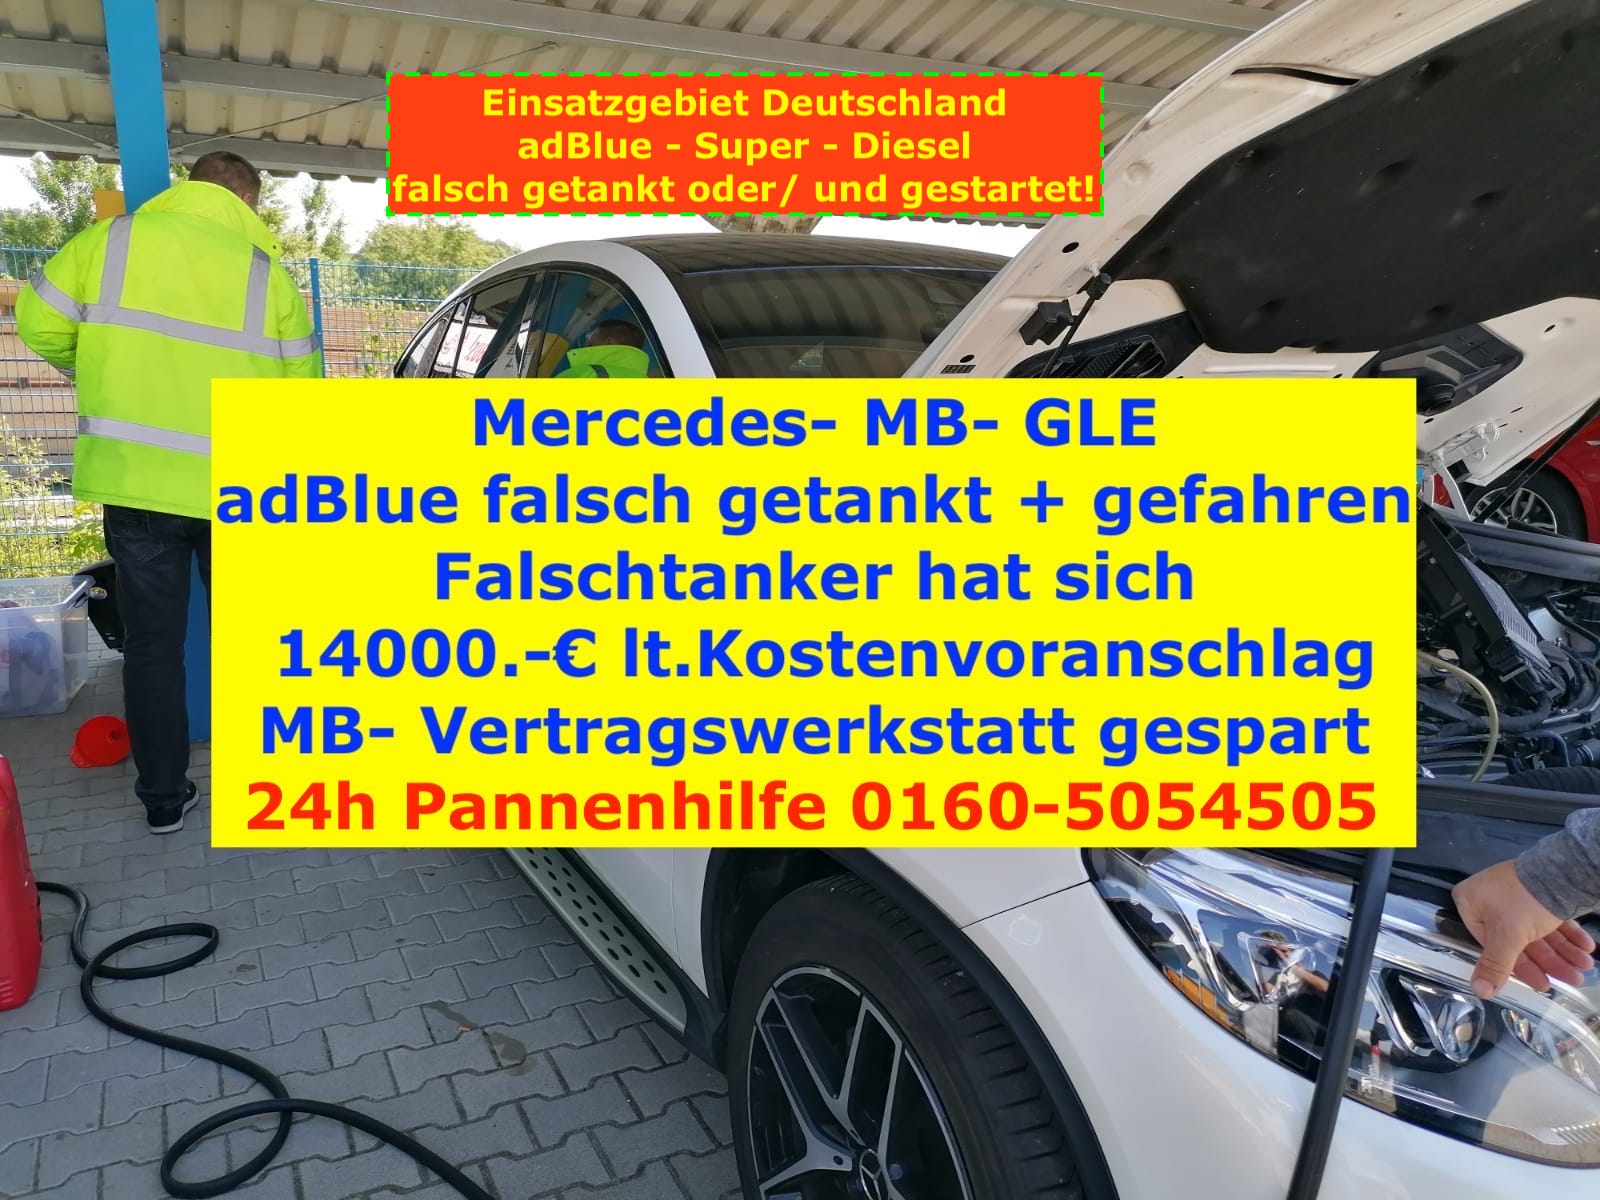 "Kraftstoff falsch getankt? 24h Mobile Auto - Motorrad - LKW - Fehlbetankung Soforthilfe/ Pannenhilfe – Deutschland